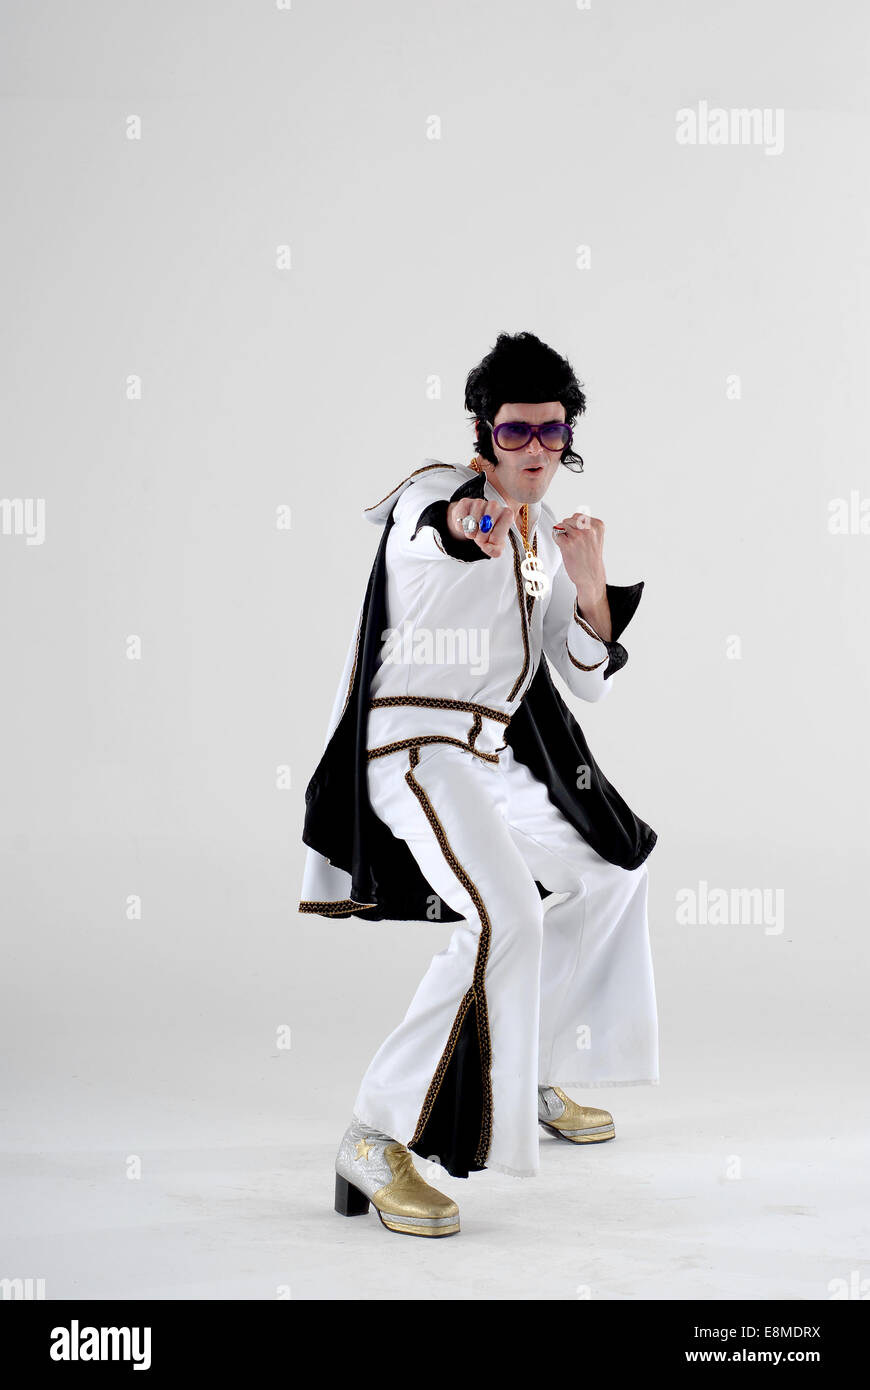 Mann gekleidet in Kostüm, Komödie Kostüm als Elvis, in voller Höhe bei der 1970er Jahre Sprunganzug mit Fackeln, Perücke, Sonnenbrille und Plattform Stiefel Stockfoto